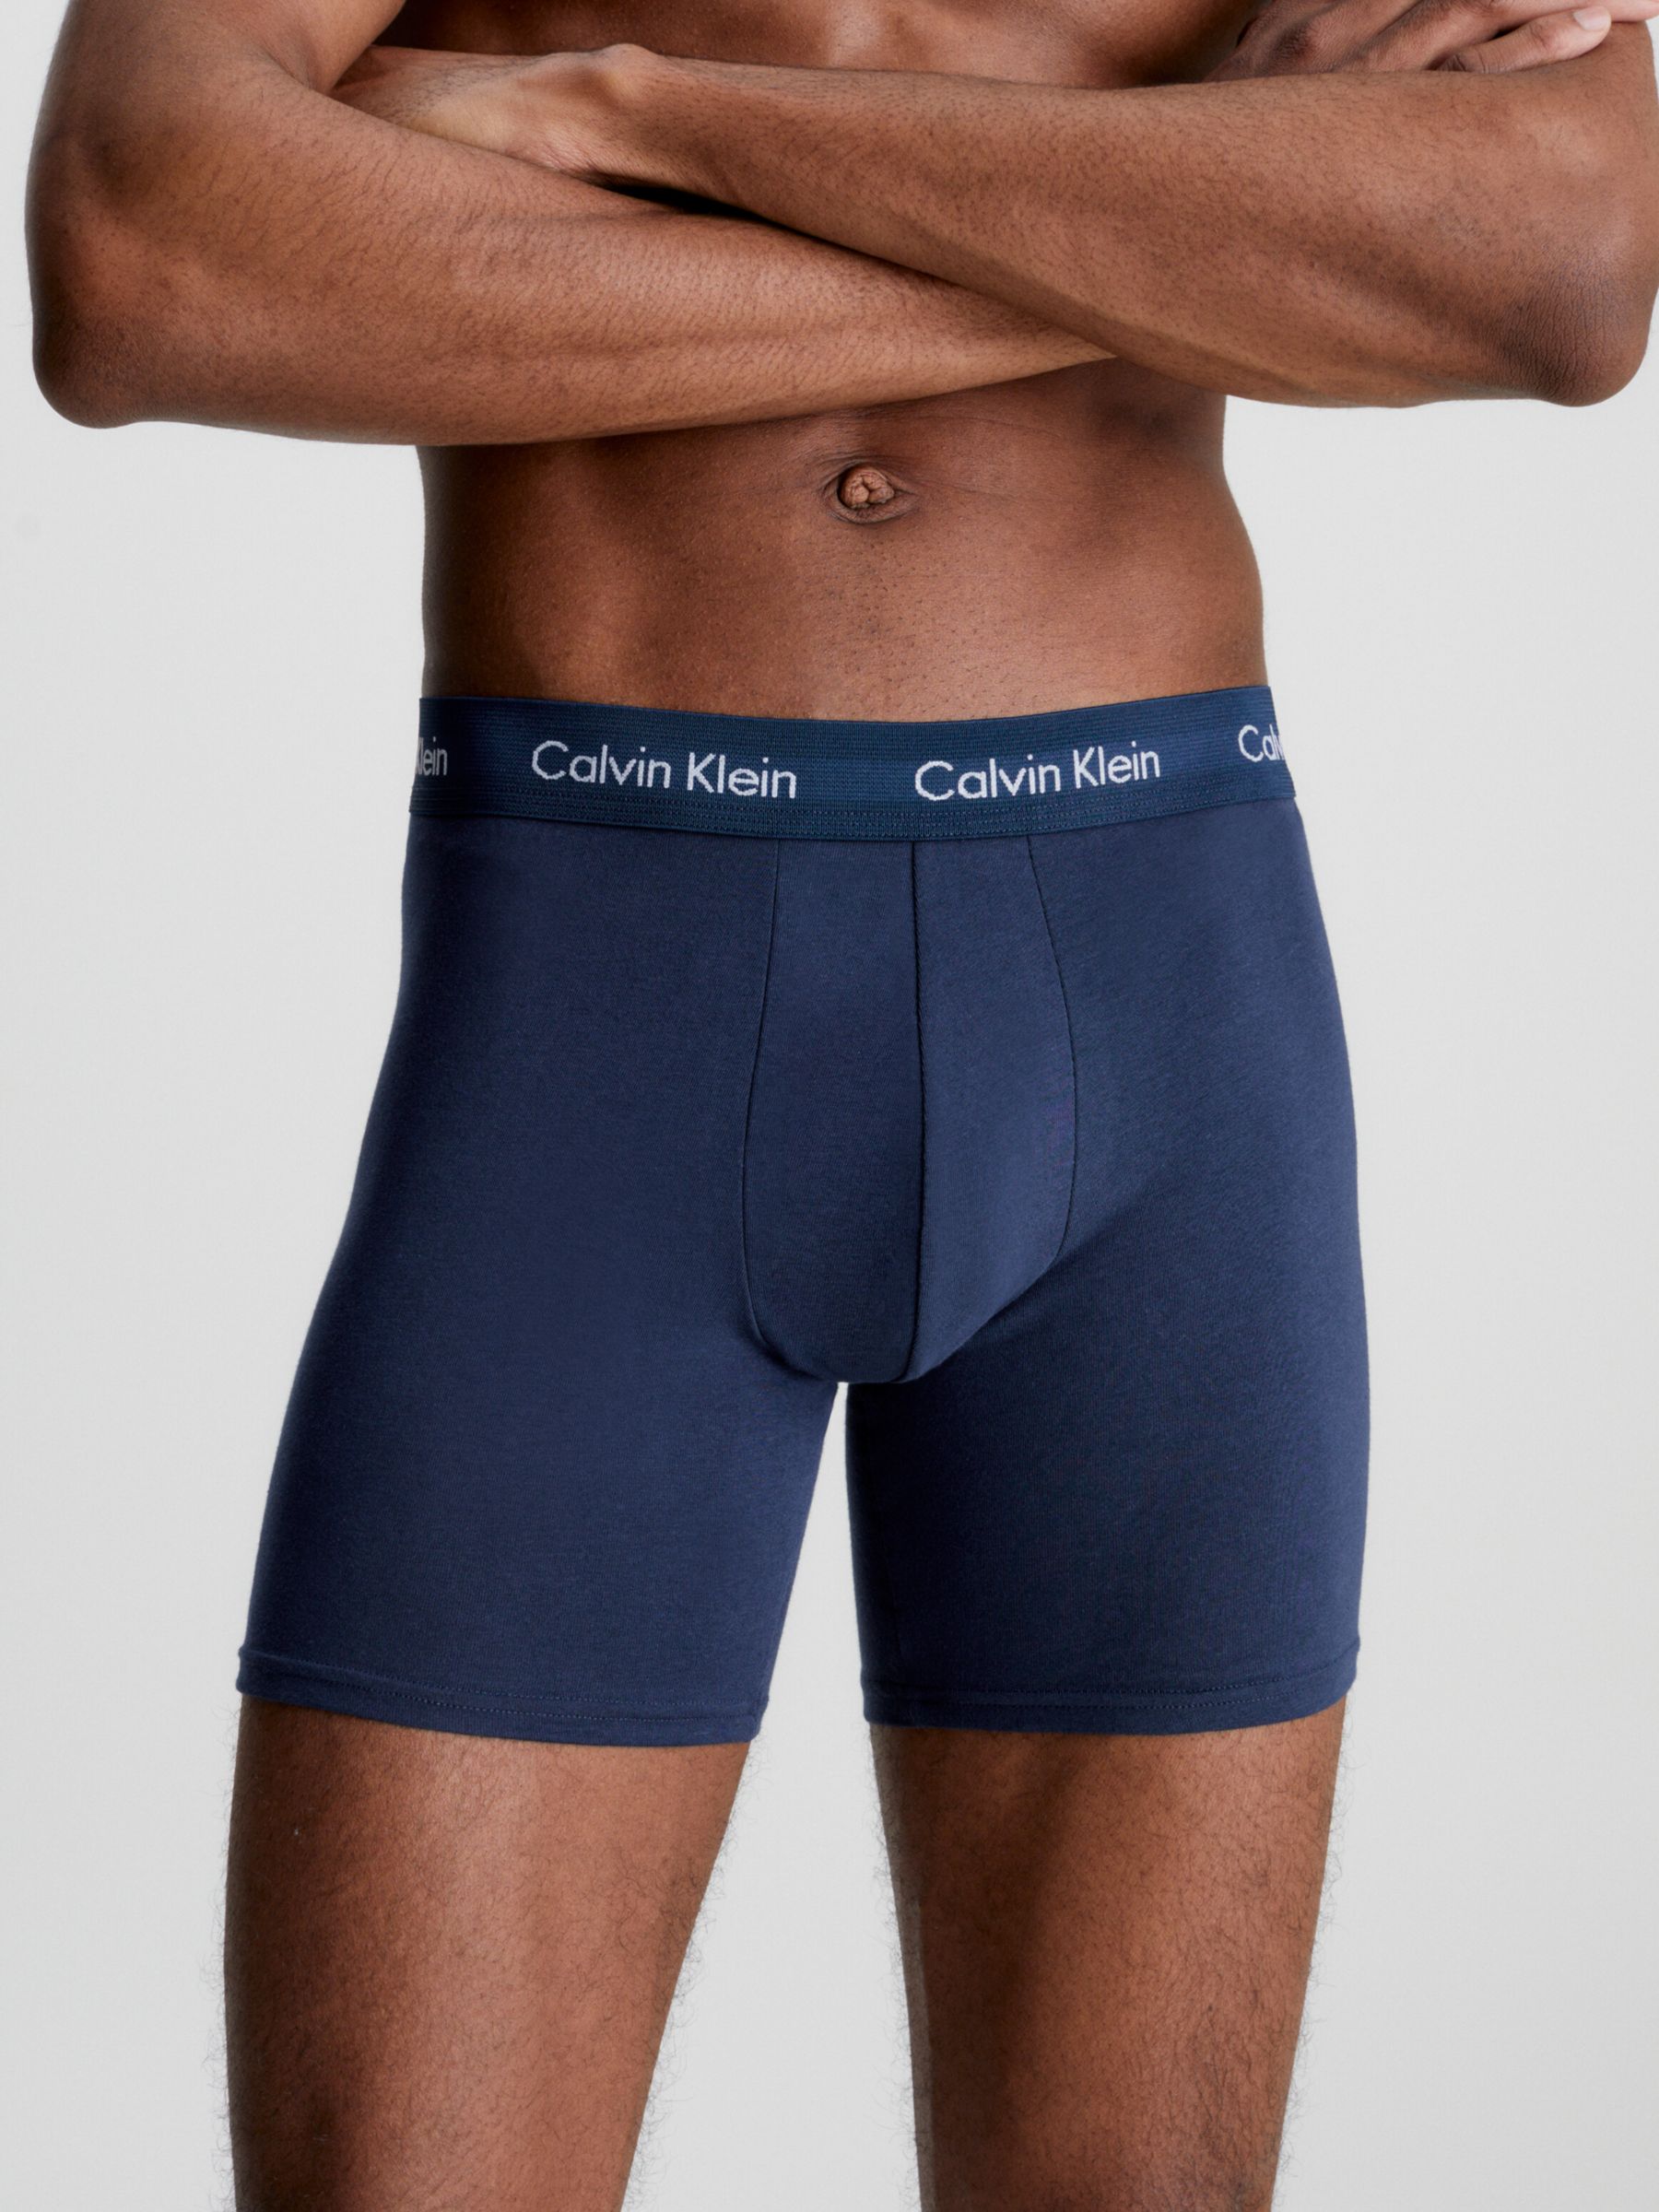 CALVIN KLEIN UNDERWEAR Calvin Klein COTTON MODAL LUXE - Brief - Men's -  black - Private Sport Shop